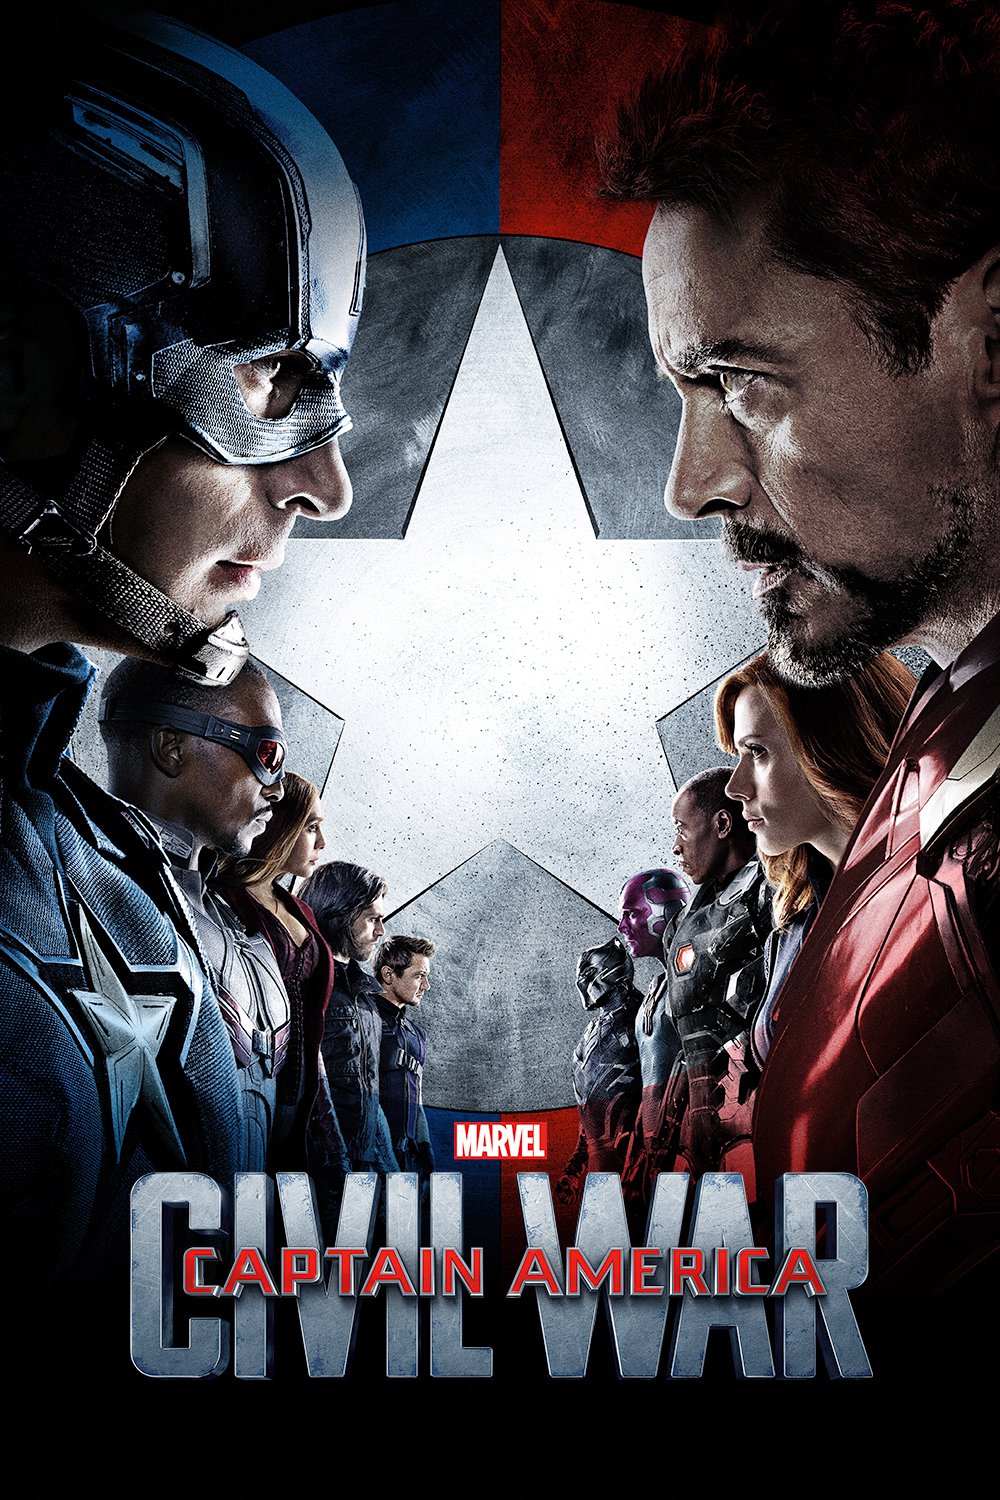 Poster de la película "Captain America: Civil War"